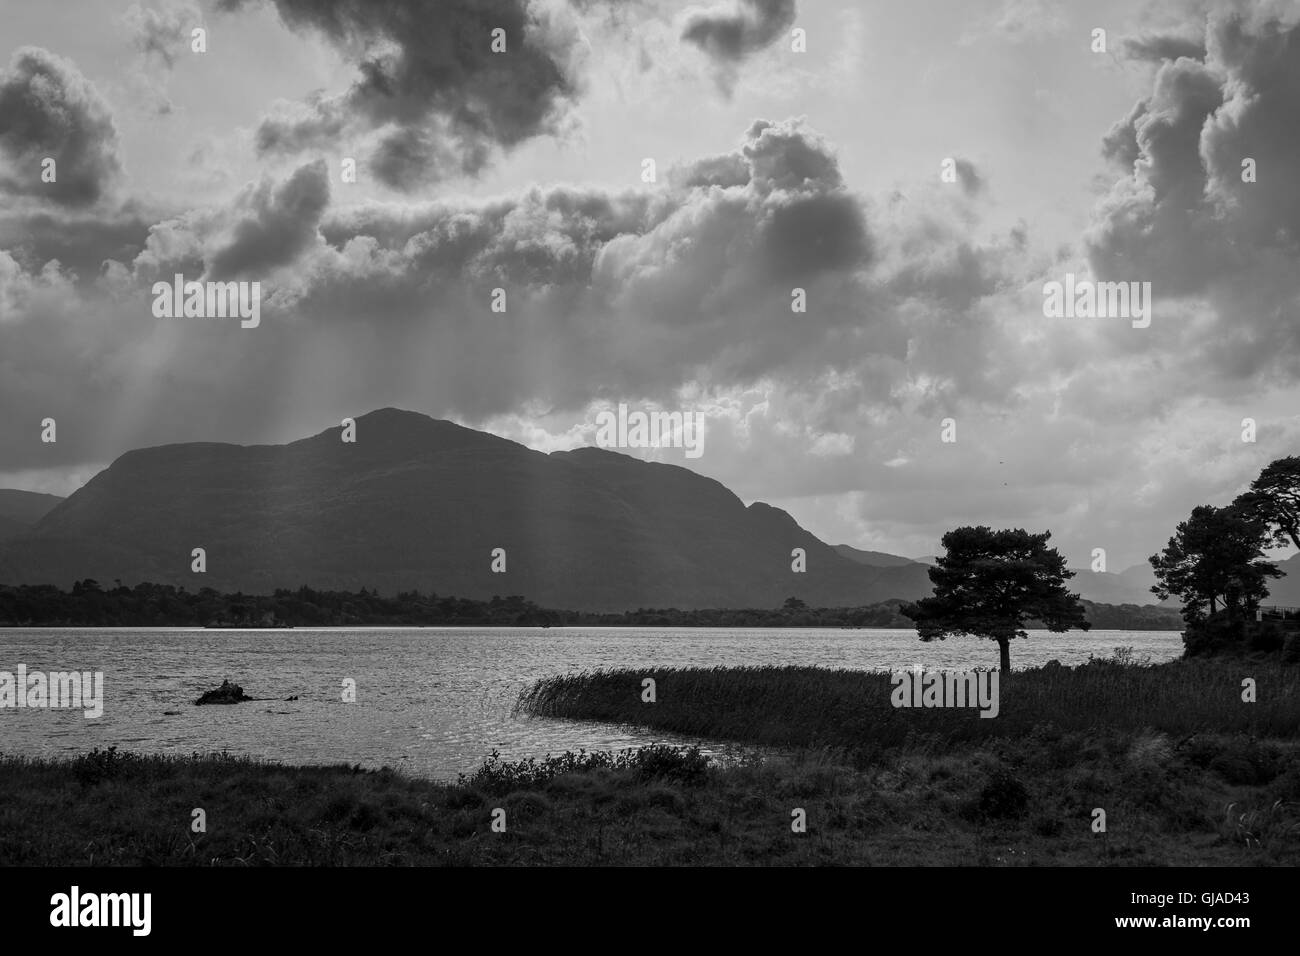 landscape photographs with sunrays, Ireland Stock Photo